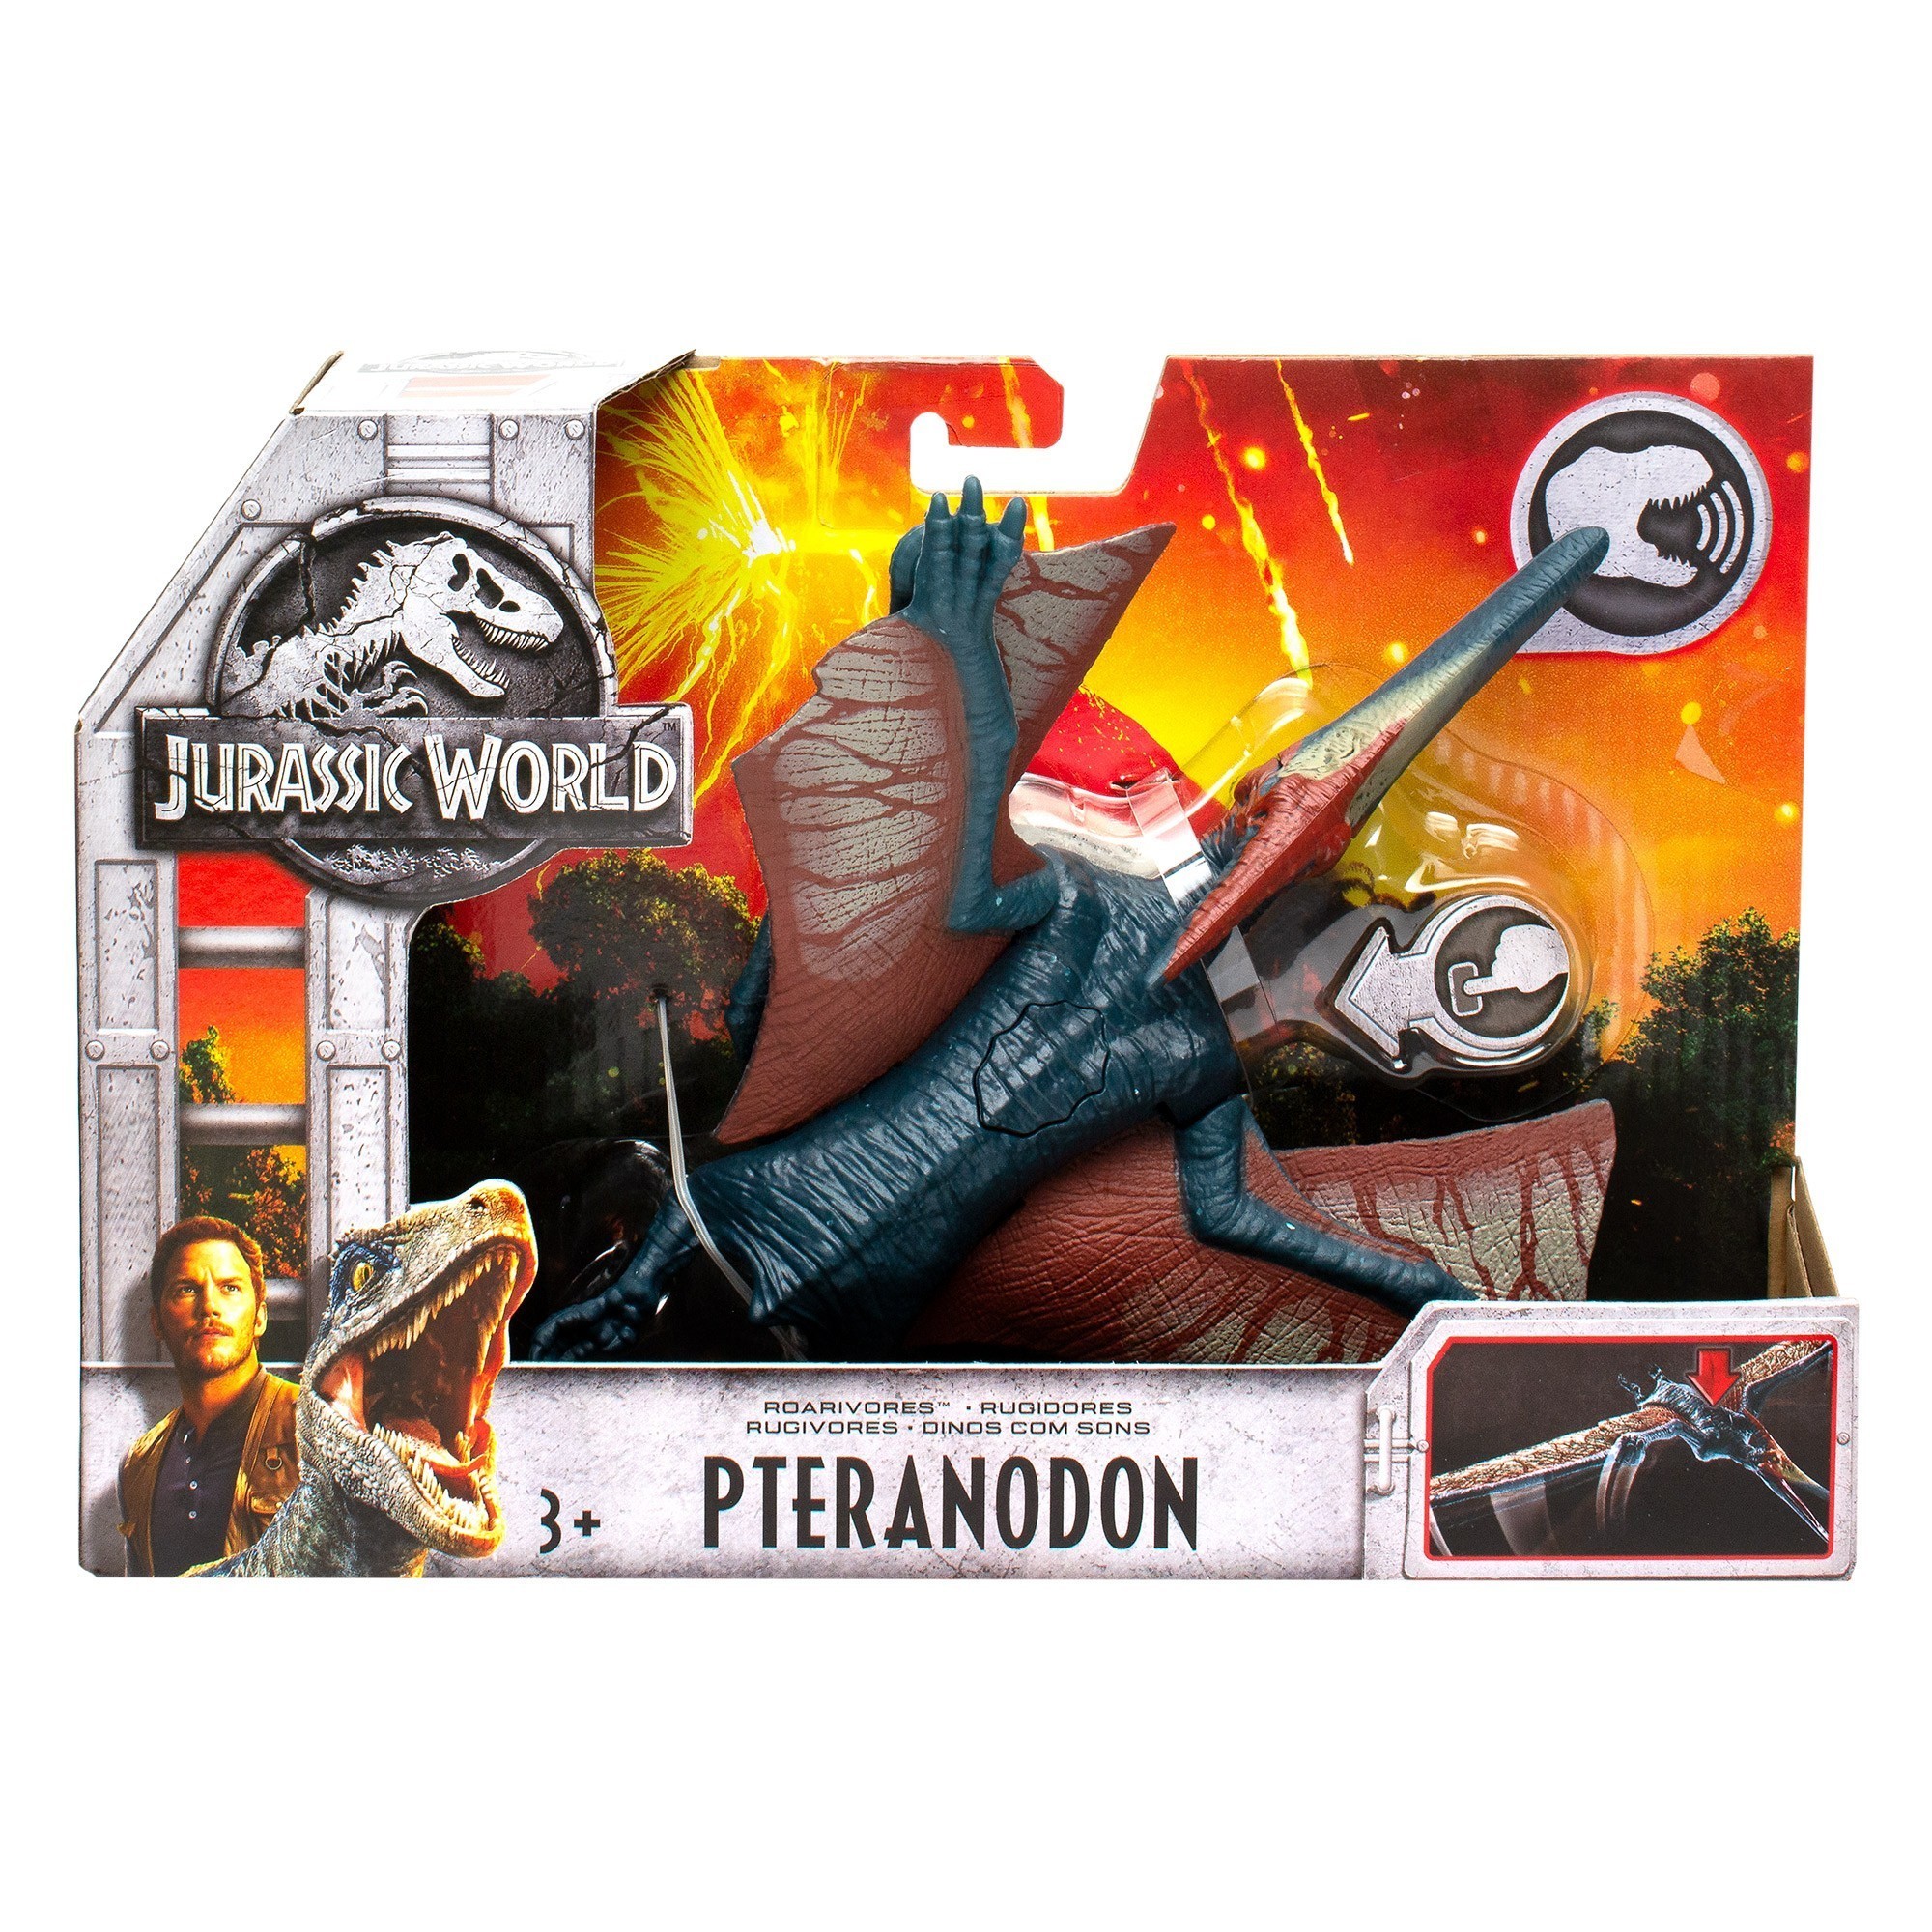 Jurassic World - Roarivores Dinosaurs - Pteranodon